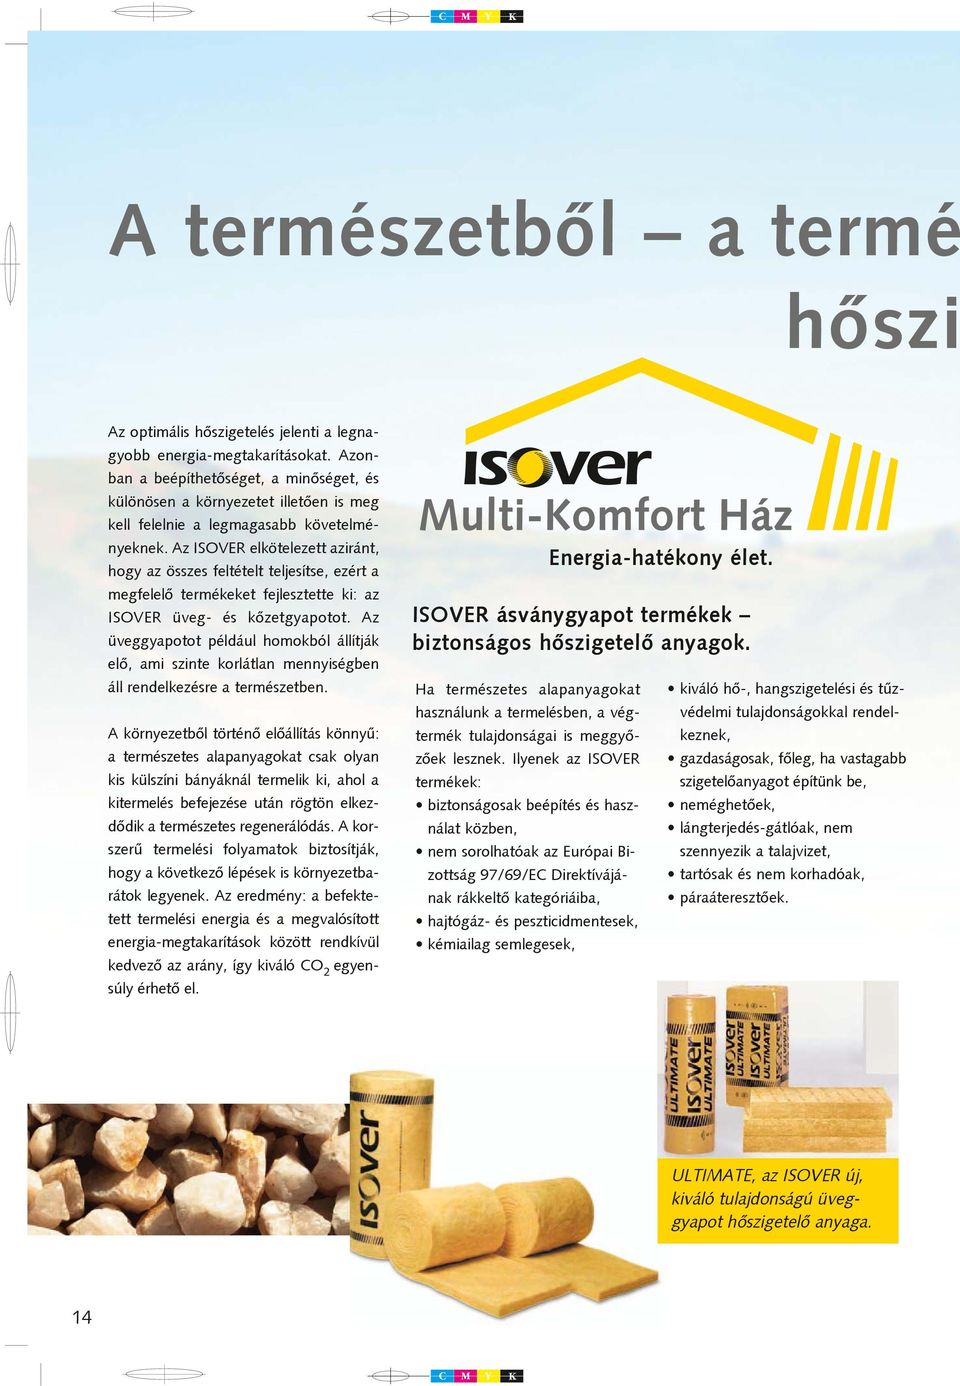 Az ISOVER elkötelezett aziránt, hogy az összes feltételt teljesítse, ezért a megfelelõ termékeket fejlesztette ki: az ISOVER üveg- és kõzetgyapotot.